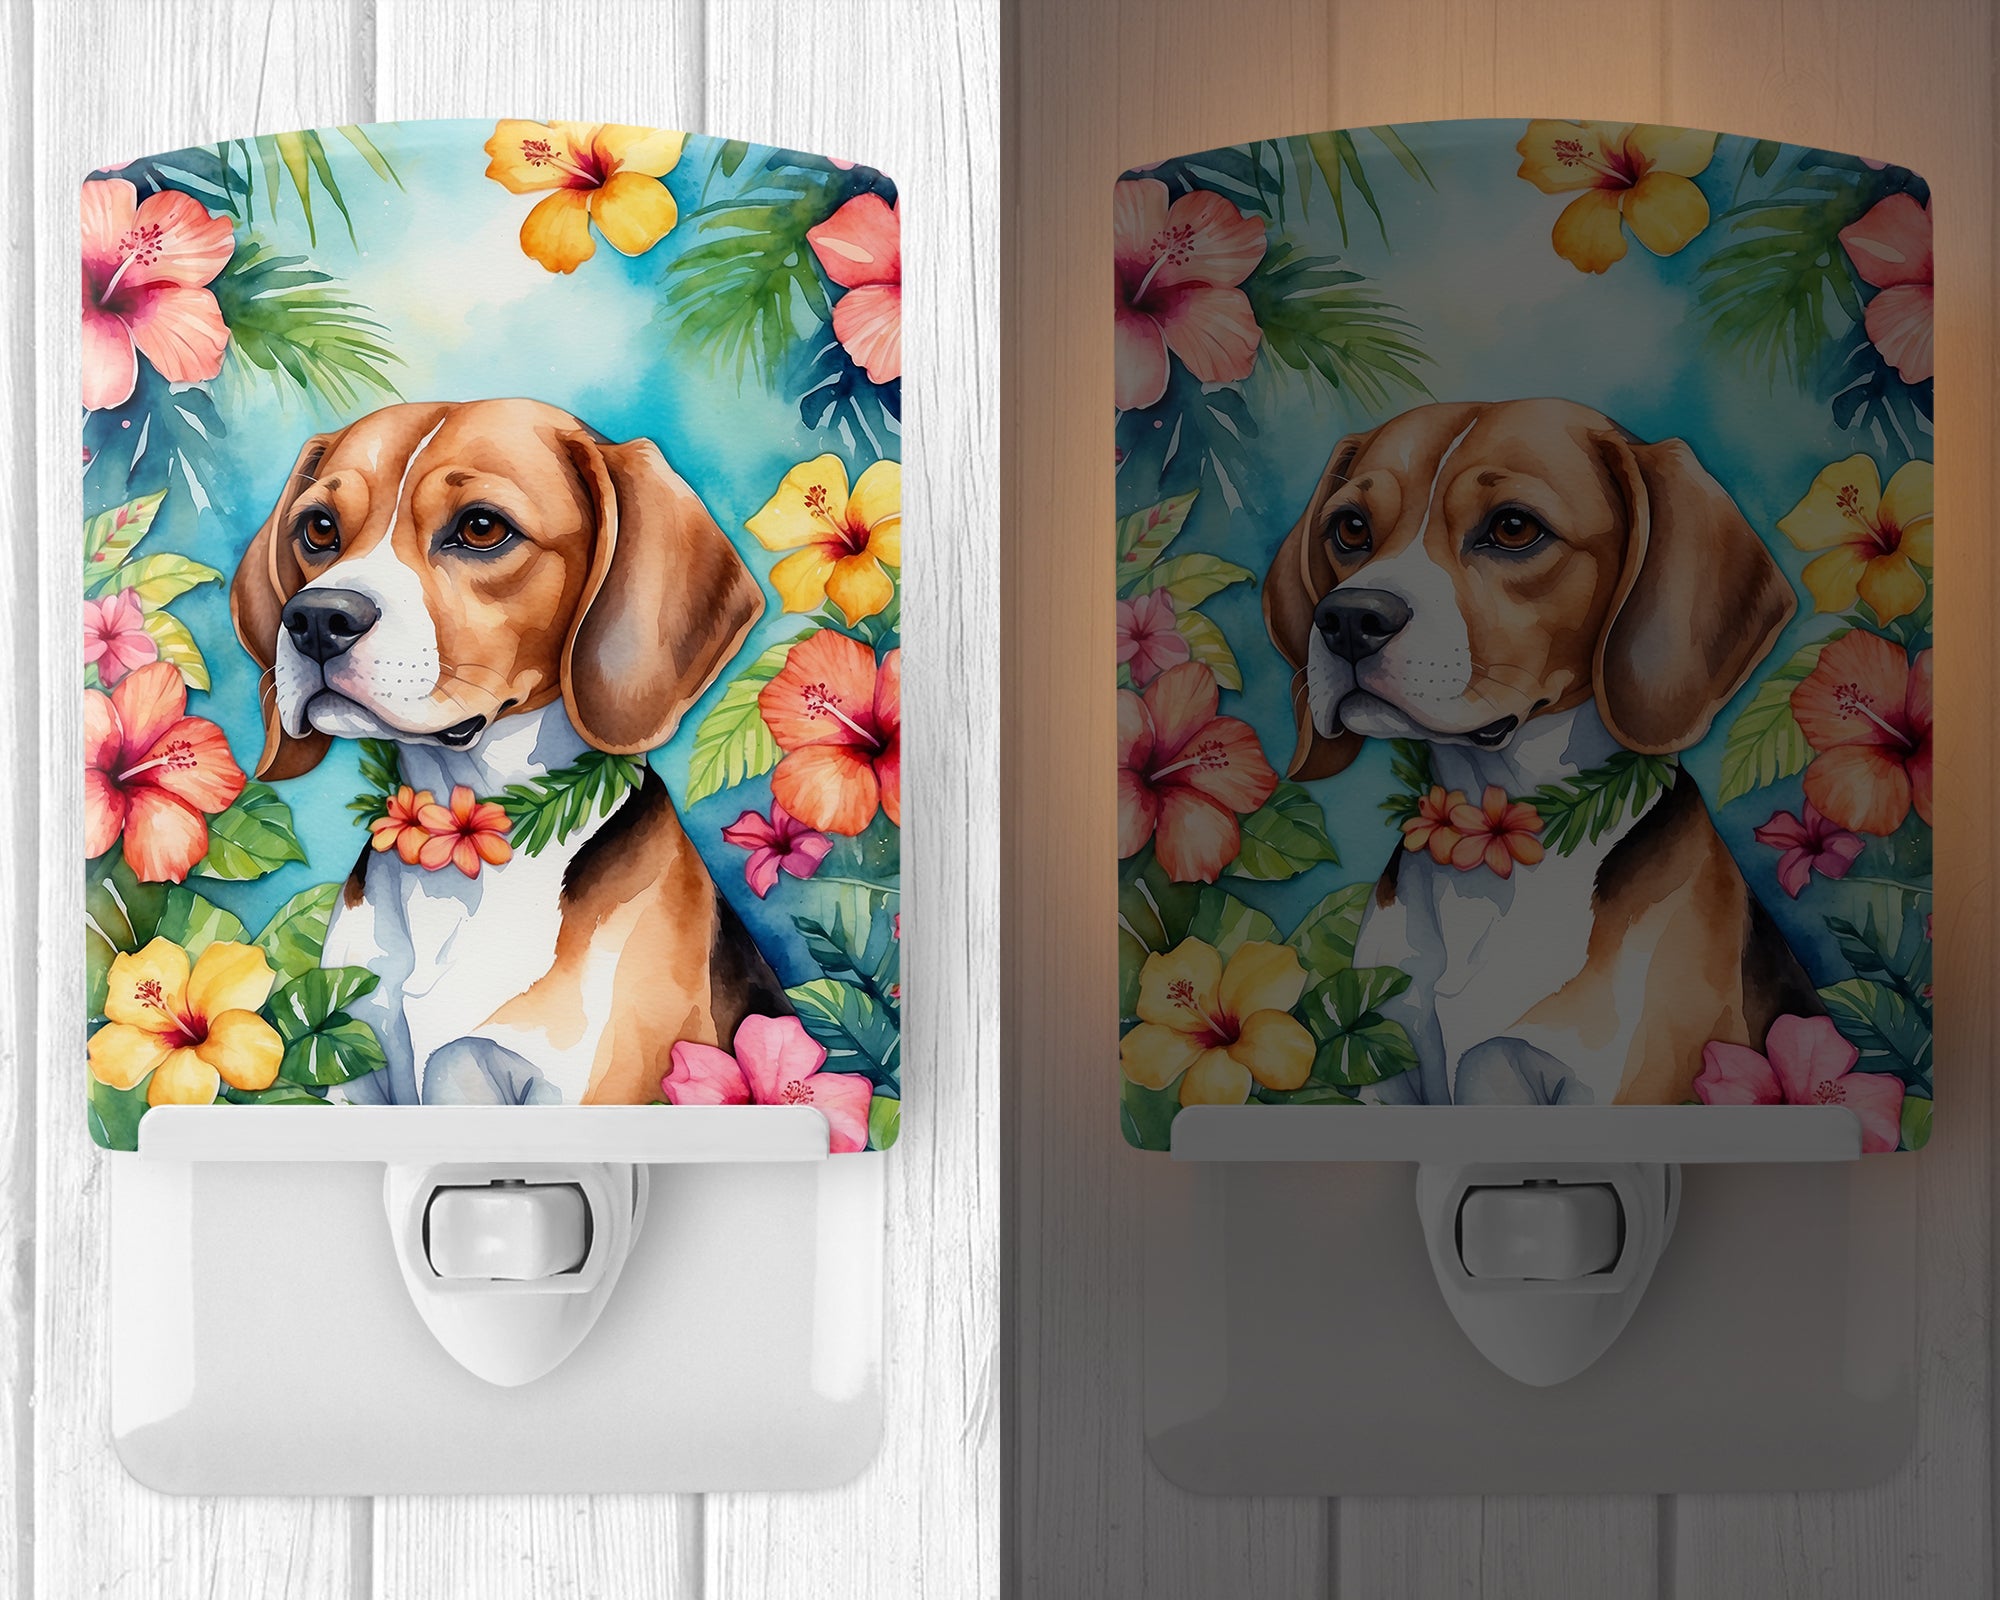 Buy this Beagle Luau Ceramic Night Light